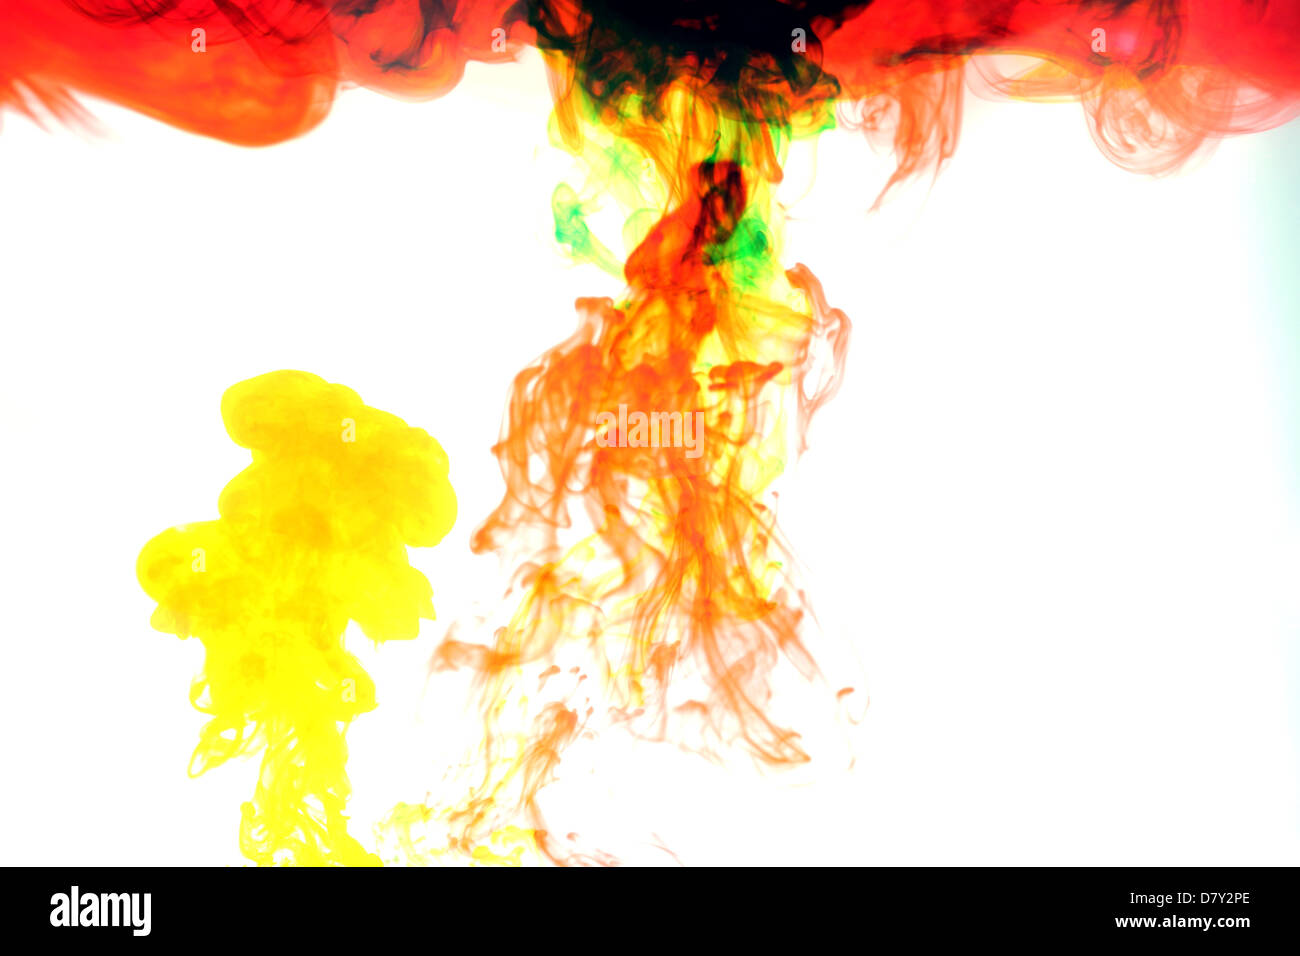 Mischen Sie Farbe Rauch verursacht durch Wasserfarbe. Stockfoto